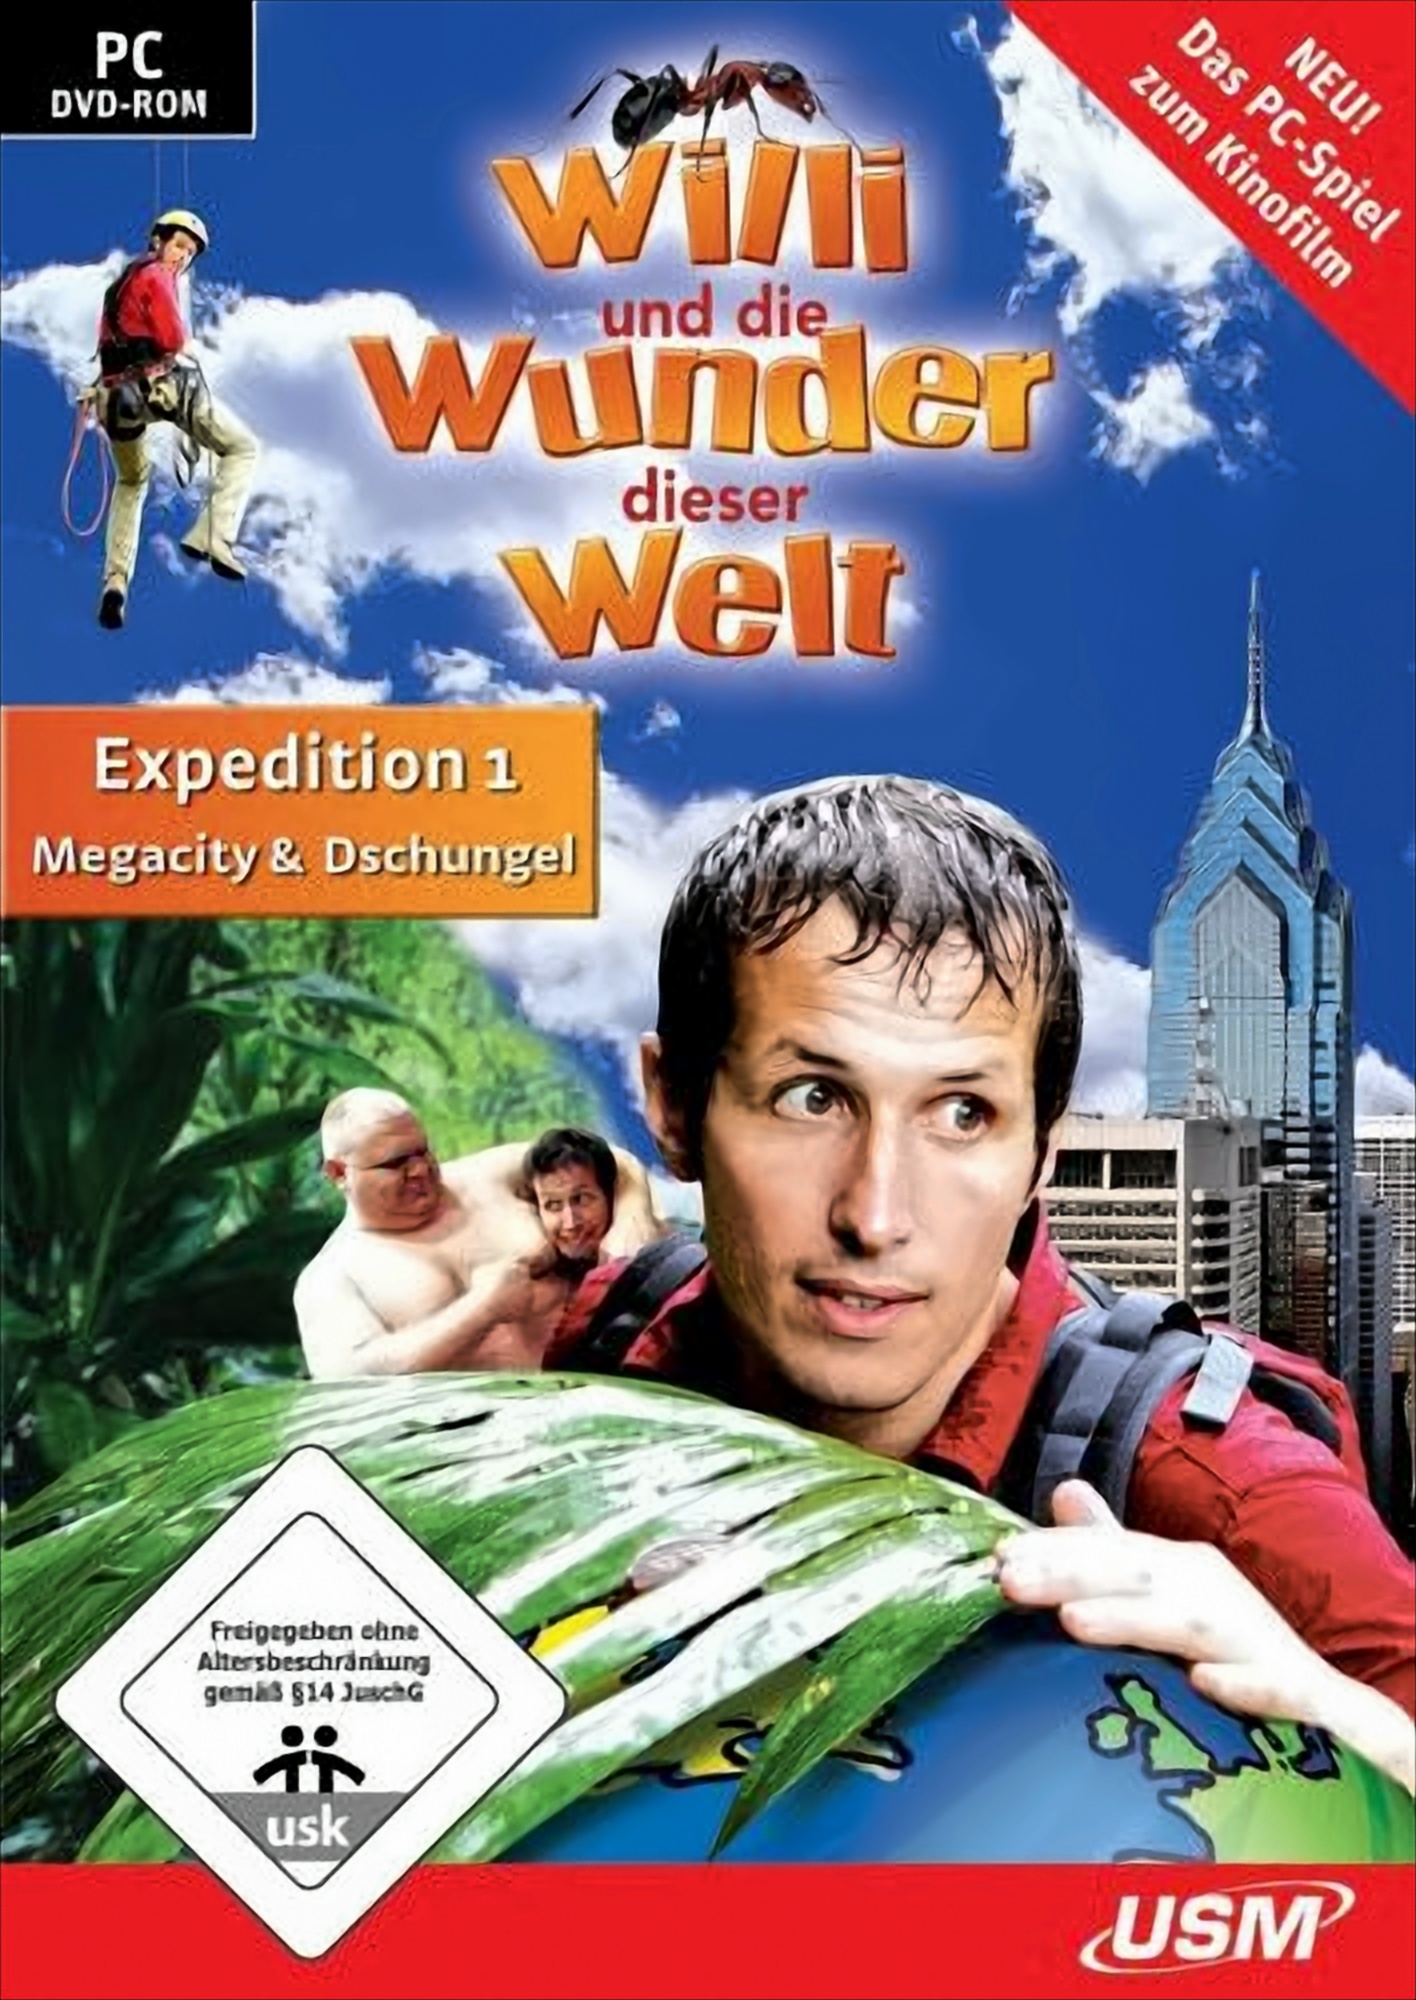 Willi und die Wunder dieser Welt-Expedition 1 - Megacity & Dschungel von USM